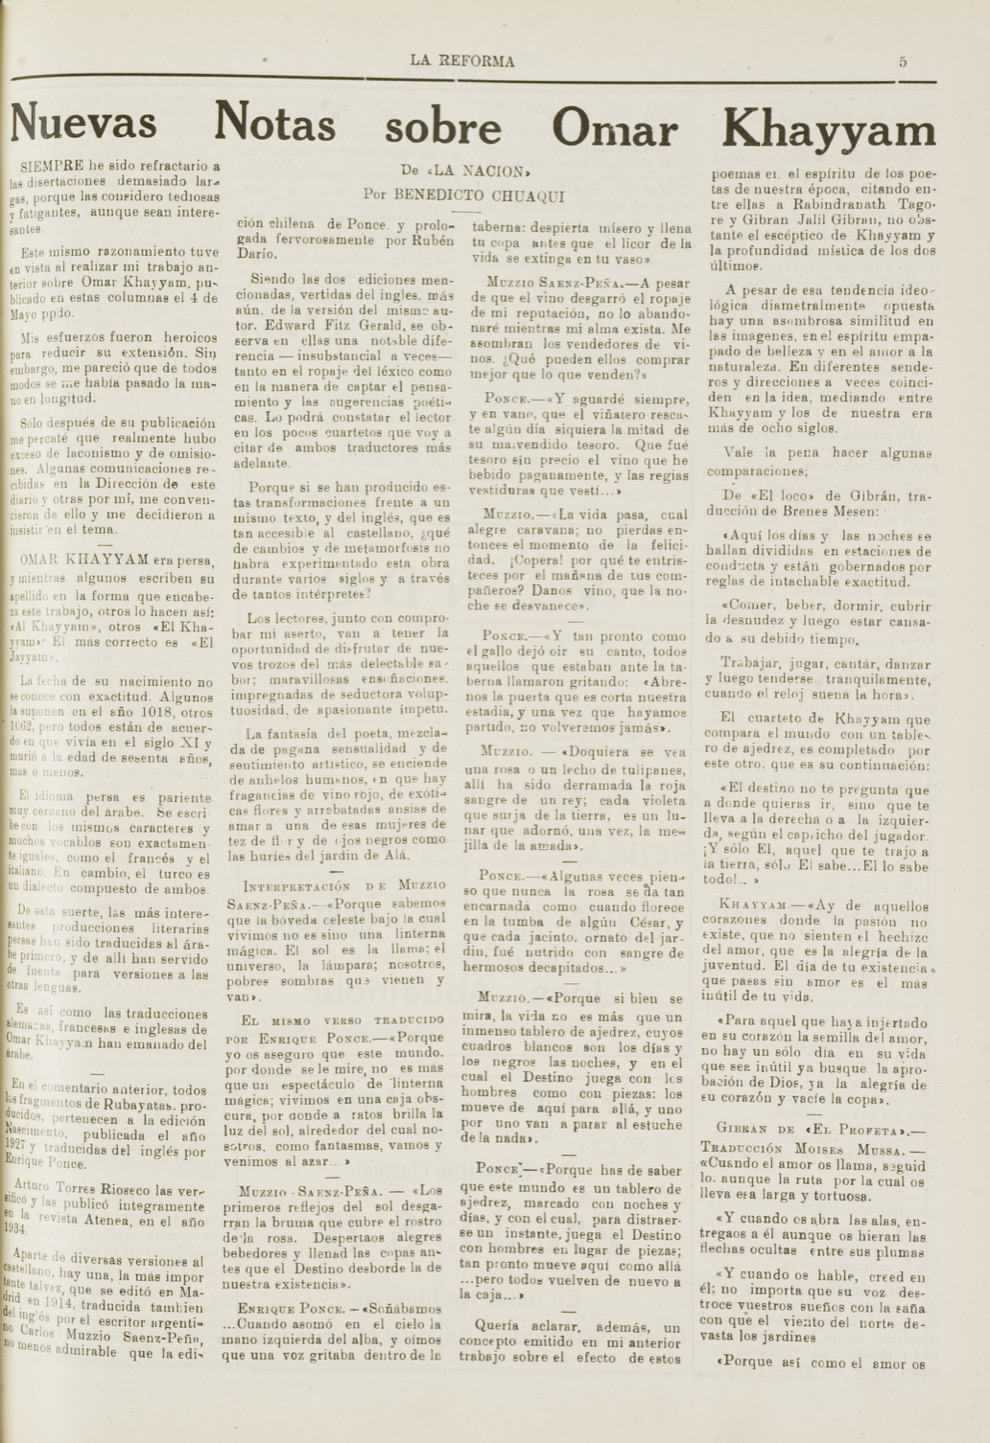 Benedicto Chuaqui, "Nuevas Notas sobre Omar Khayyam", La Reforma, Jun 28, 1941, pp. 5-6.